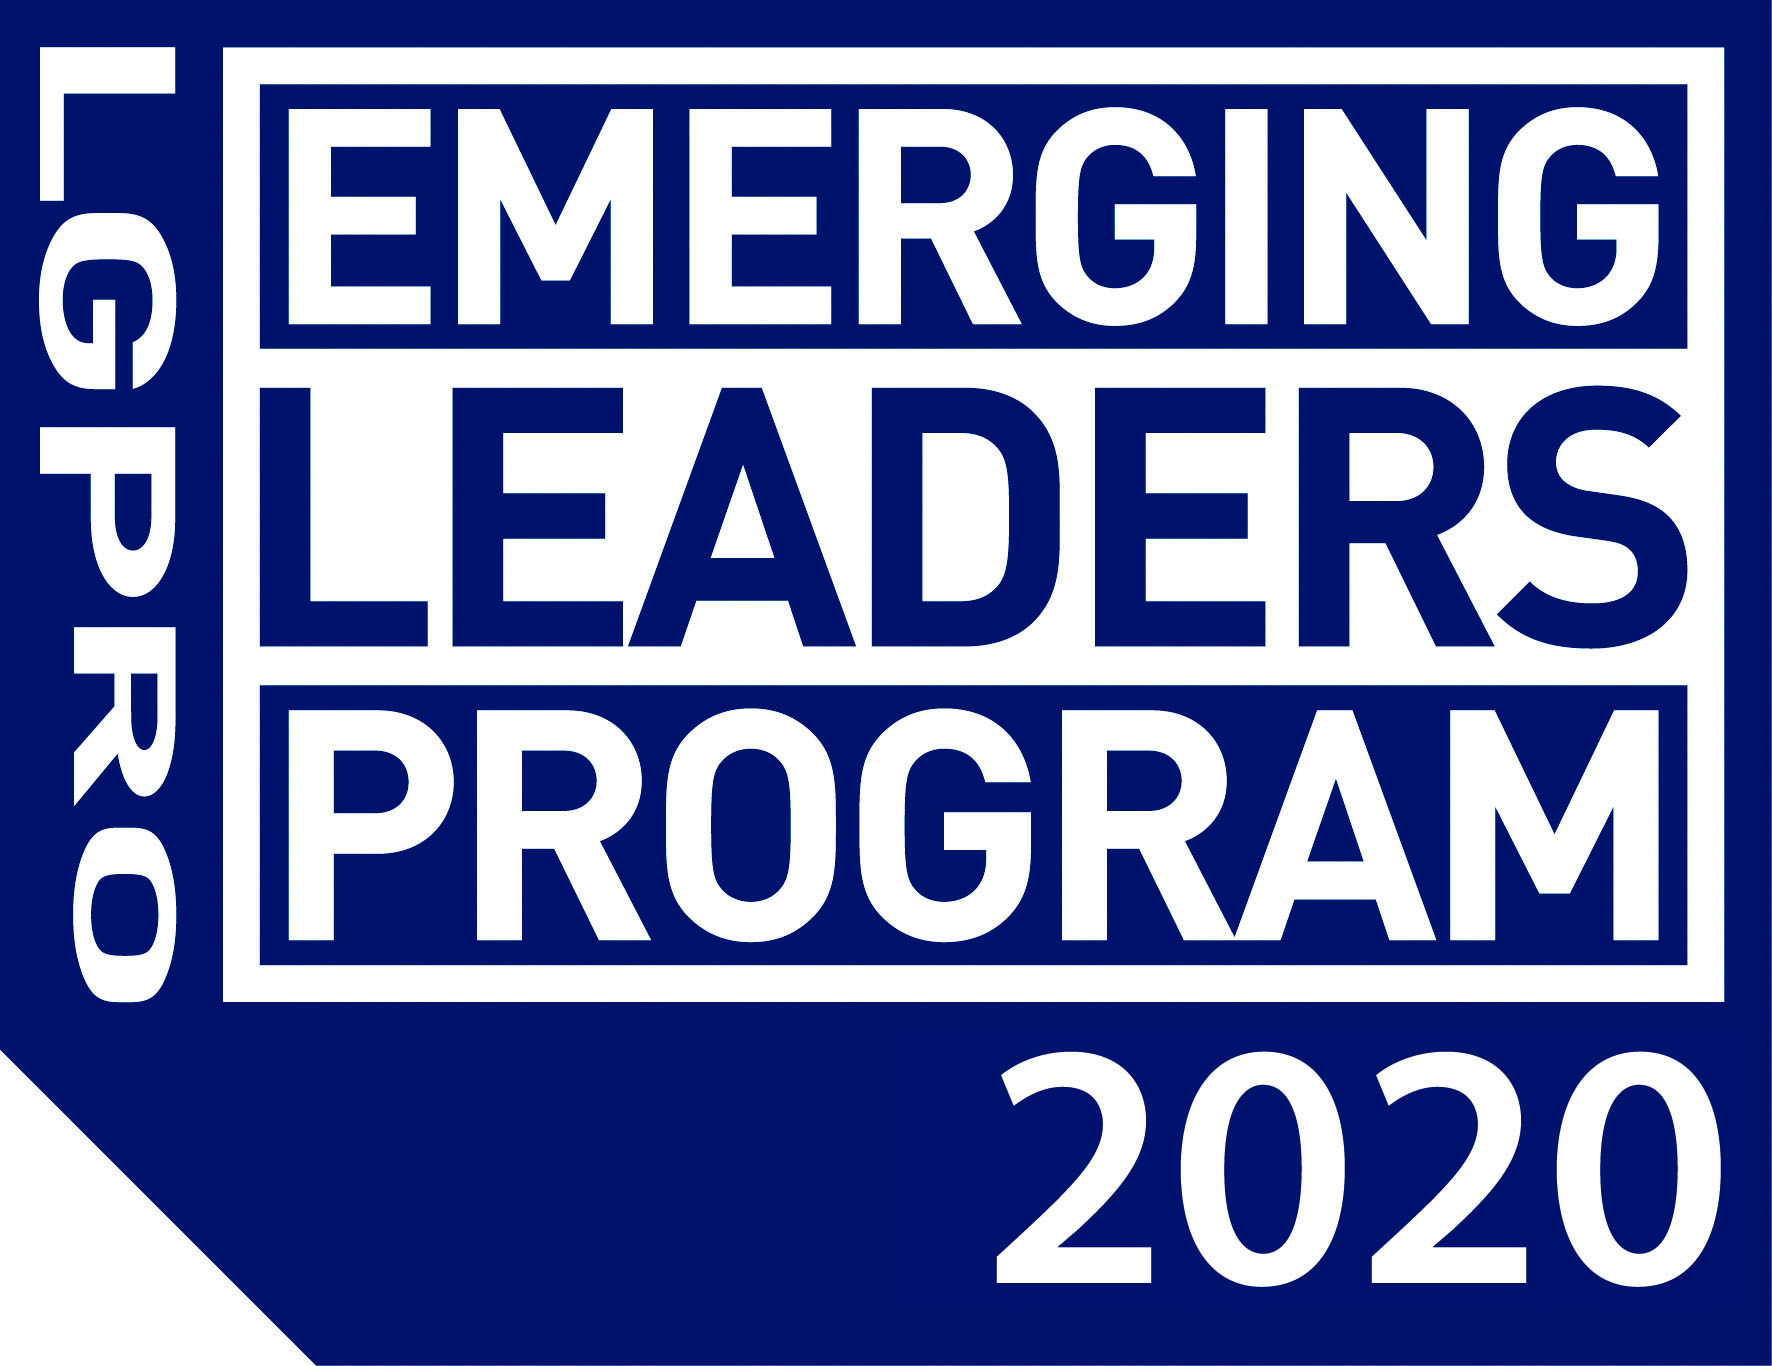 Emerging Leaders Program 2020